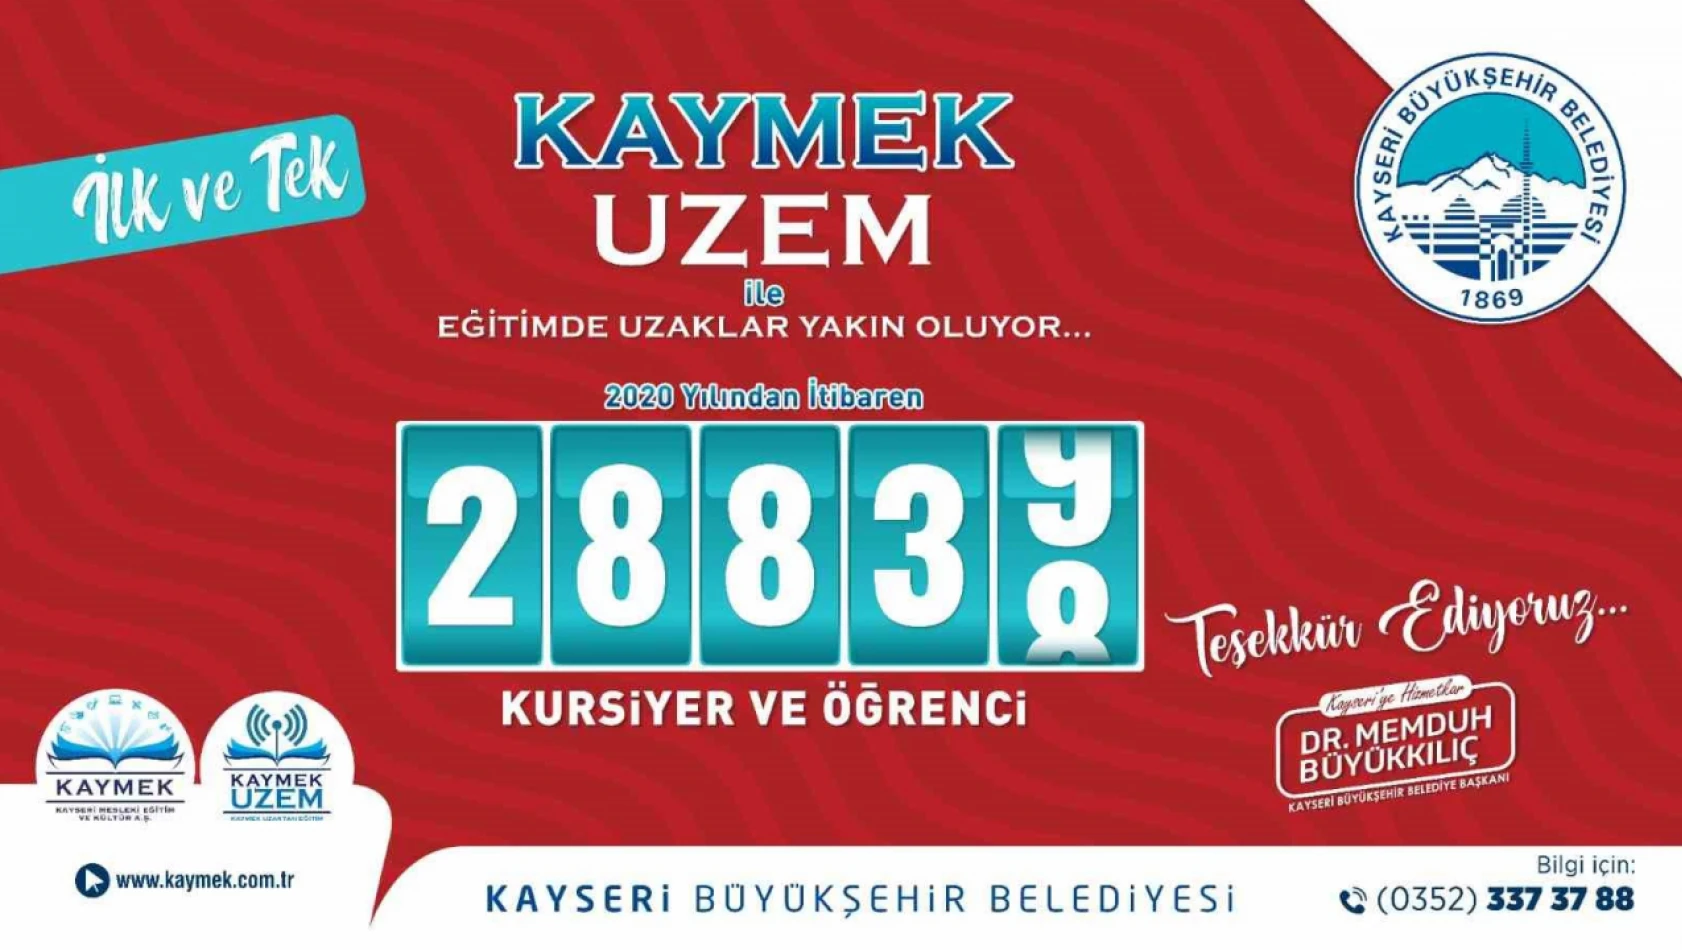 KAYMEK UZEM ile 28 bin 838 öğrenciye ücretsiz eğitim verdi